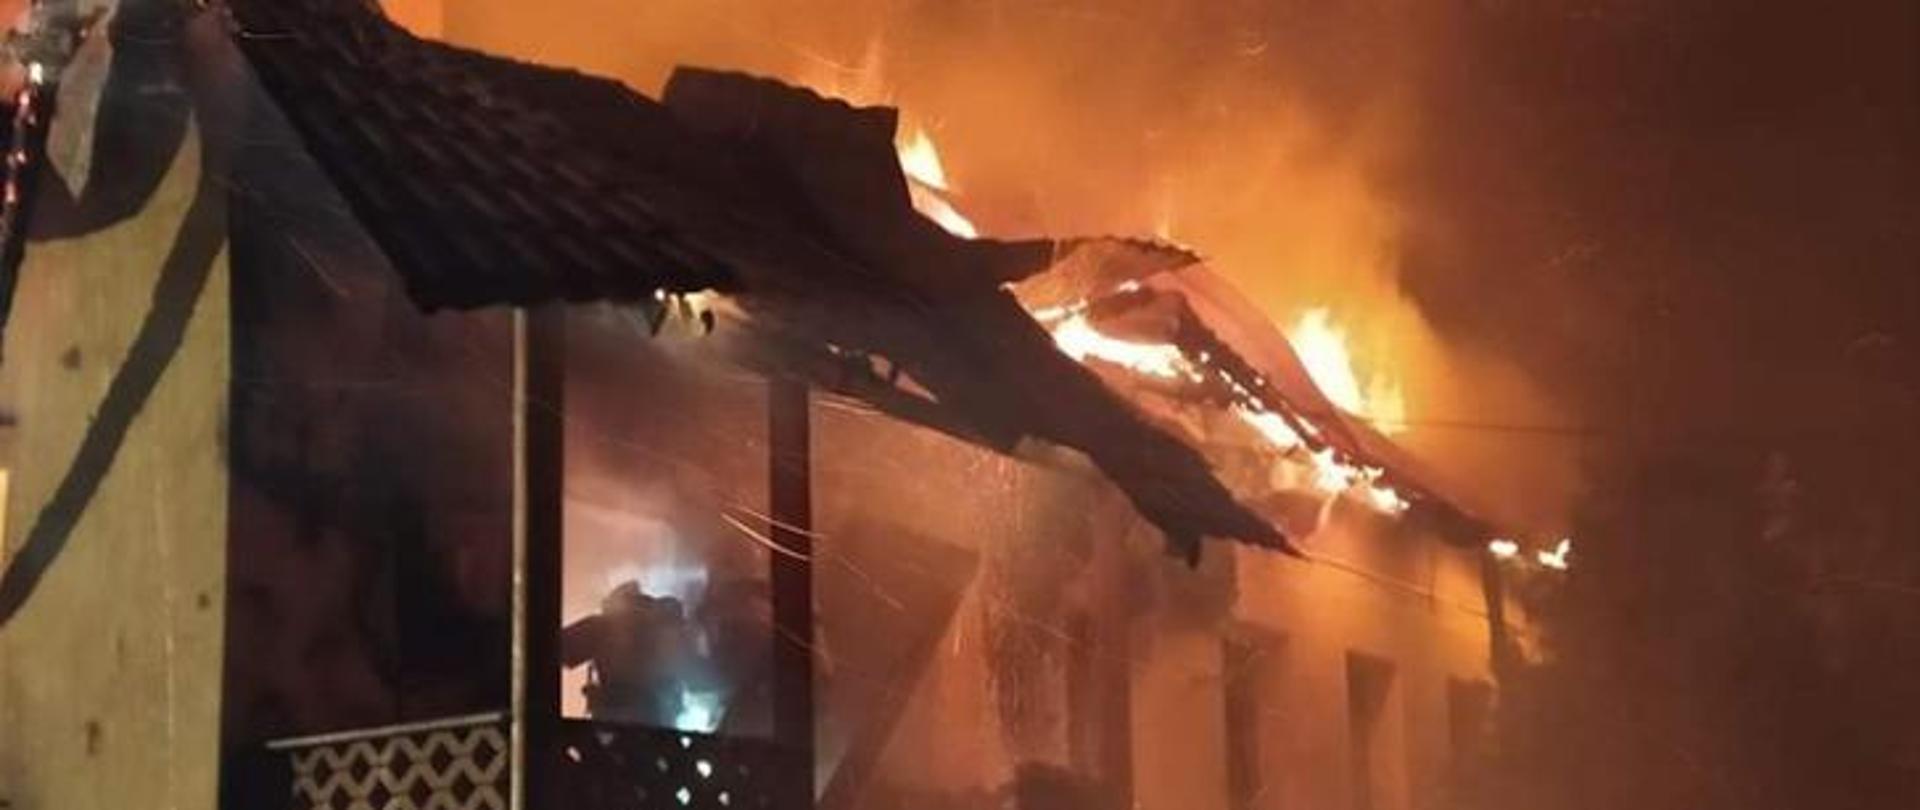 Zdjęcie nocne przedstawiające pożar parterowego budynku mieszkalnego jednorodzinnego. Płomienie wydobywają się spod pokrycia dachu. W wejściu do płonącego budynku widoczny jest strażak w ubraniu specjalnym, wyposażony w aparat powietrzny.